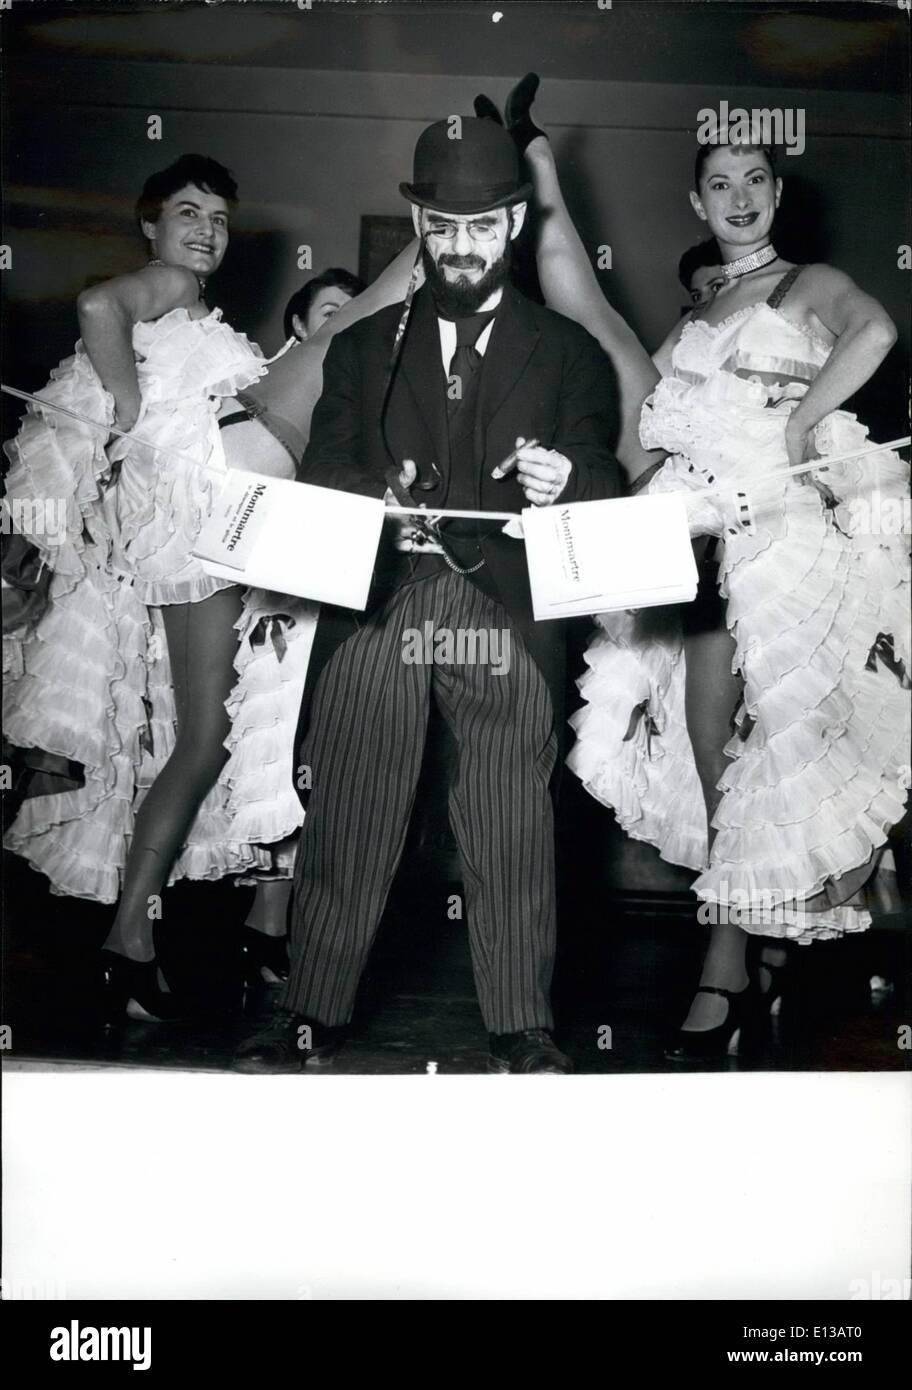 29 février 2012 - Toulouse Lautrec dans le Moulin Rouge , ''inaugure'' sa chambre. dans la salle de Toulouse - Lautrec, œuvres du maître ont été ajoutés aux affiches qui honorent la mémoire de la . ''Casino'' et ''valentin-le-Desossz'', pour la signature d'Henry peruchot's book , 5 vie de Toulouse -lautrec . photo montre de deux danseurs du célèbre french cancan un petit homme coupe le rub d'interdiction de l'inauguration de la salle. Banque D'Images